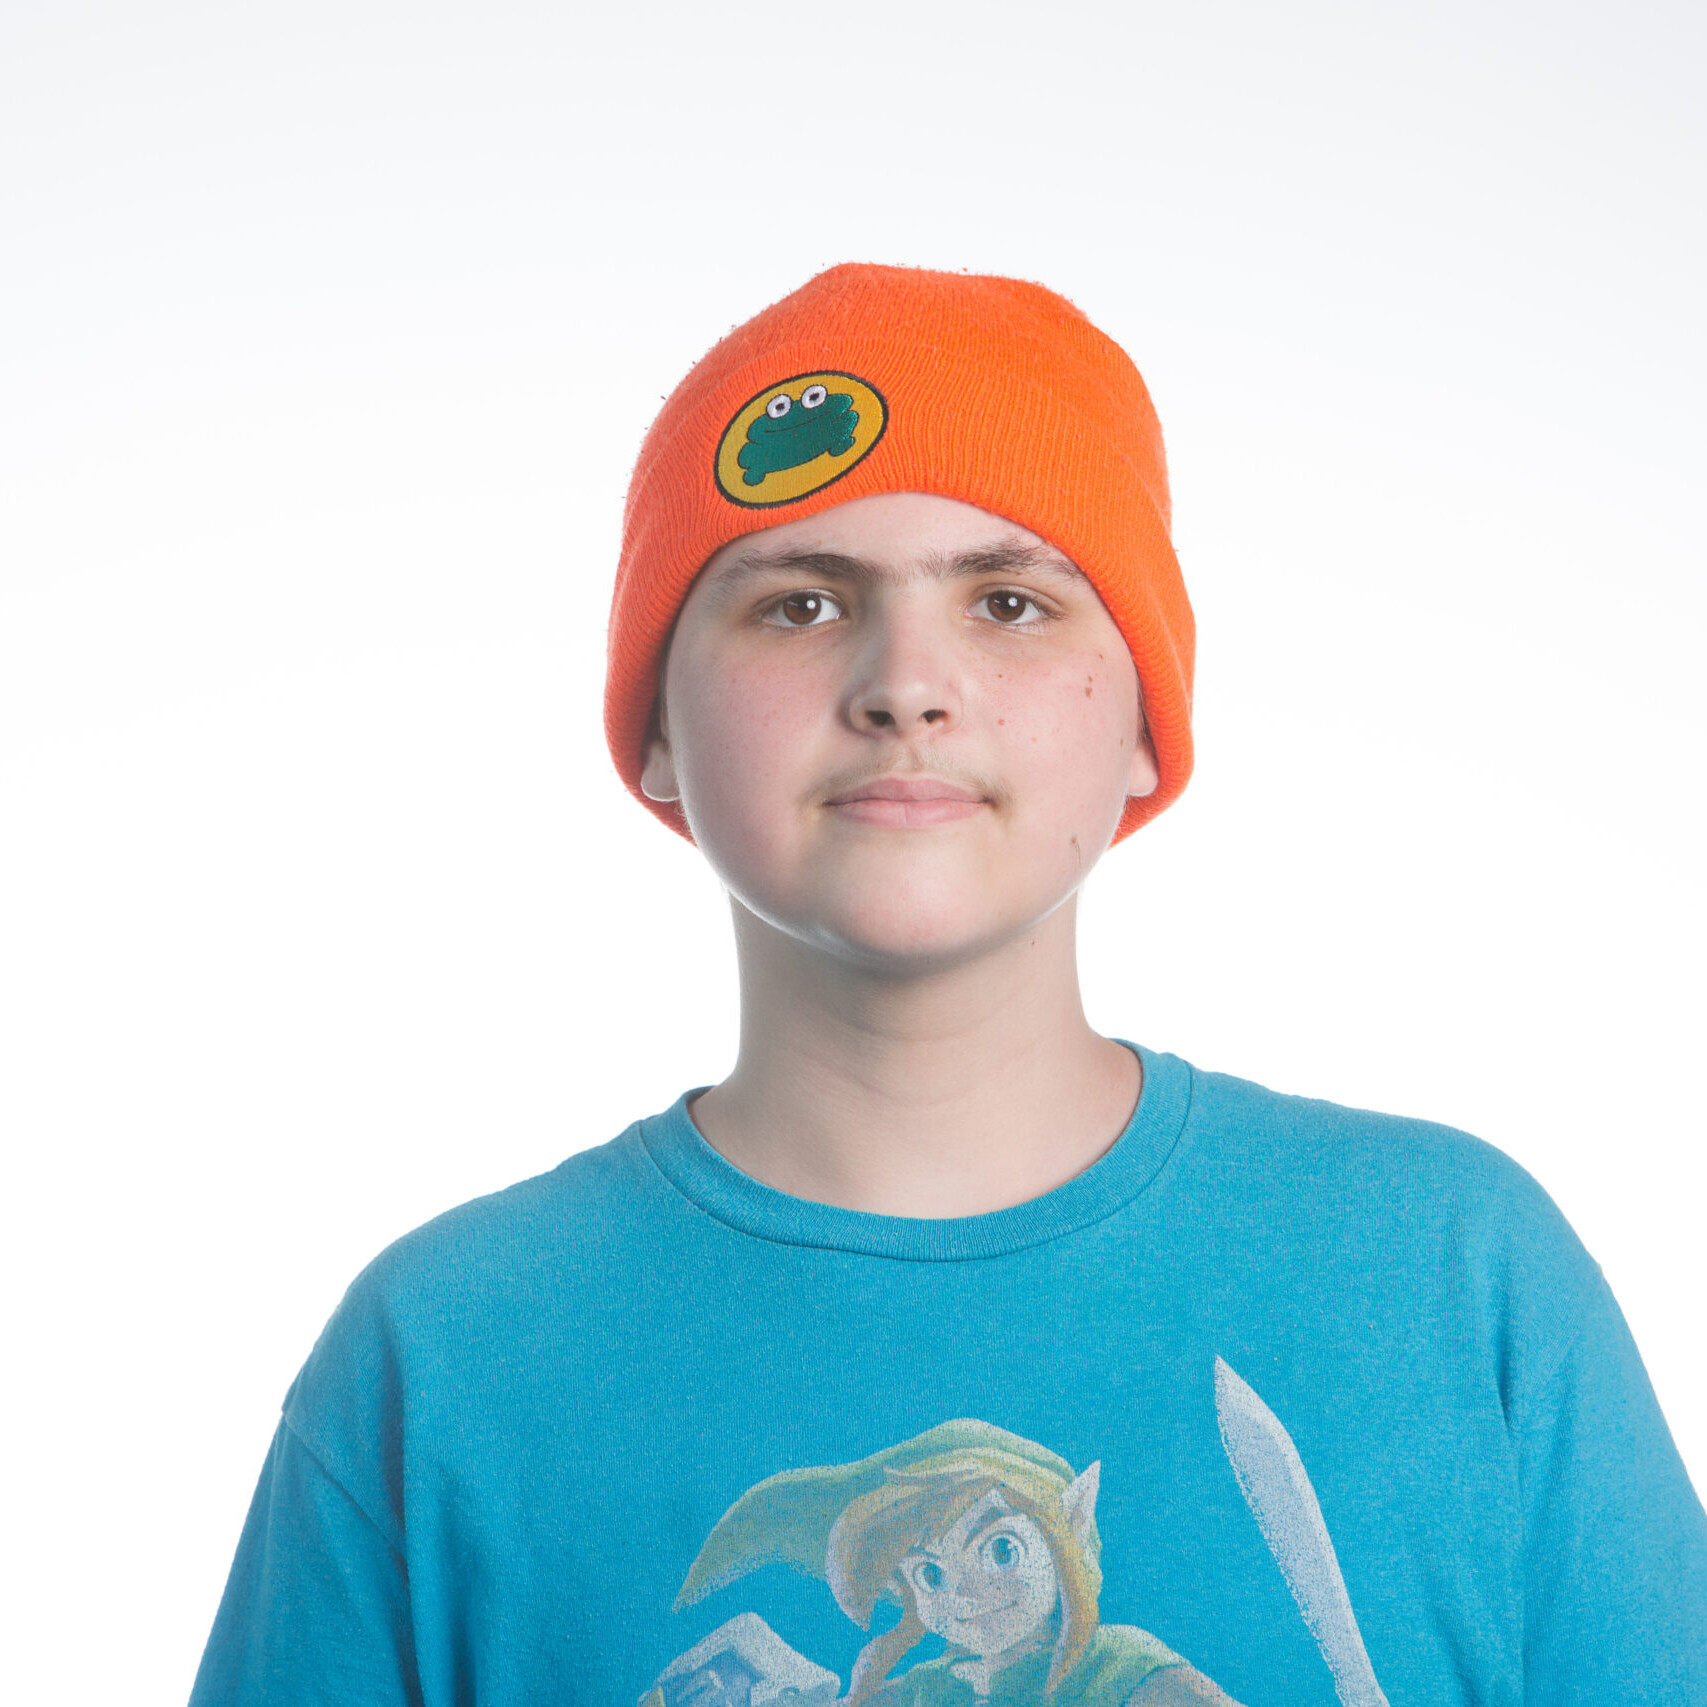 TK wearing an orange hat